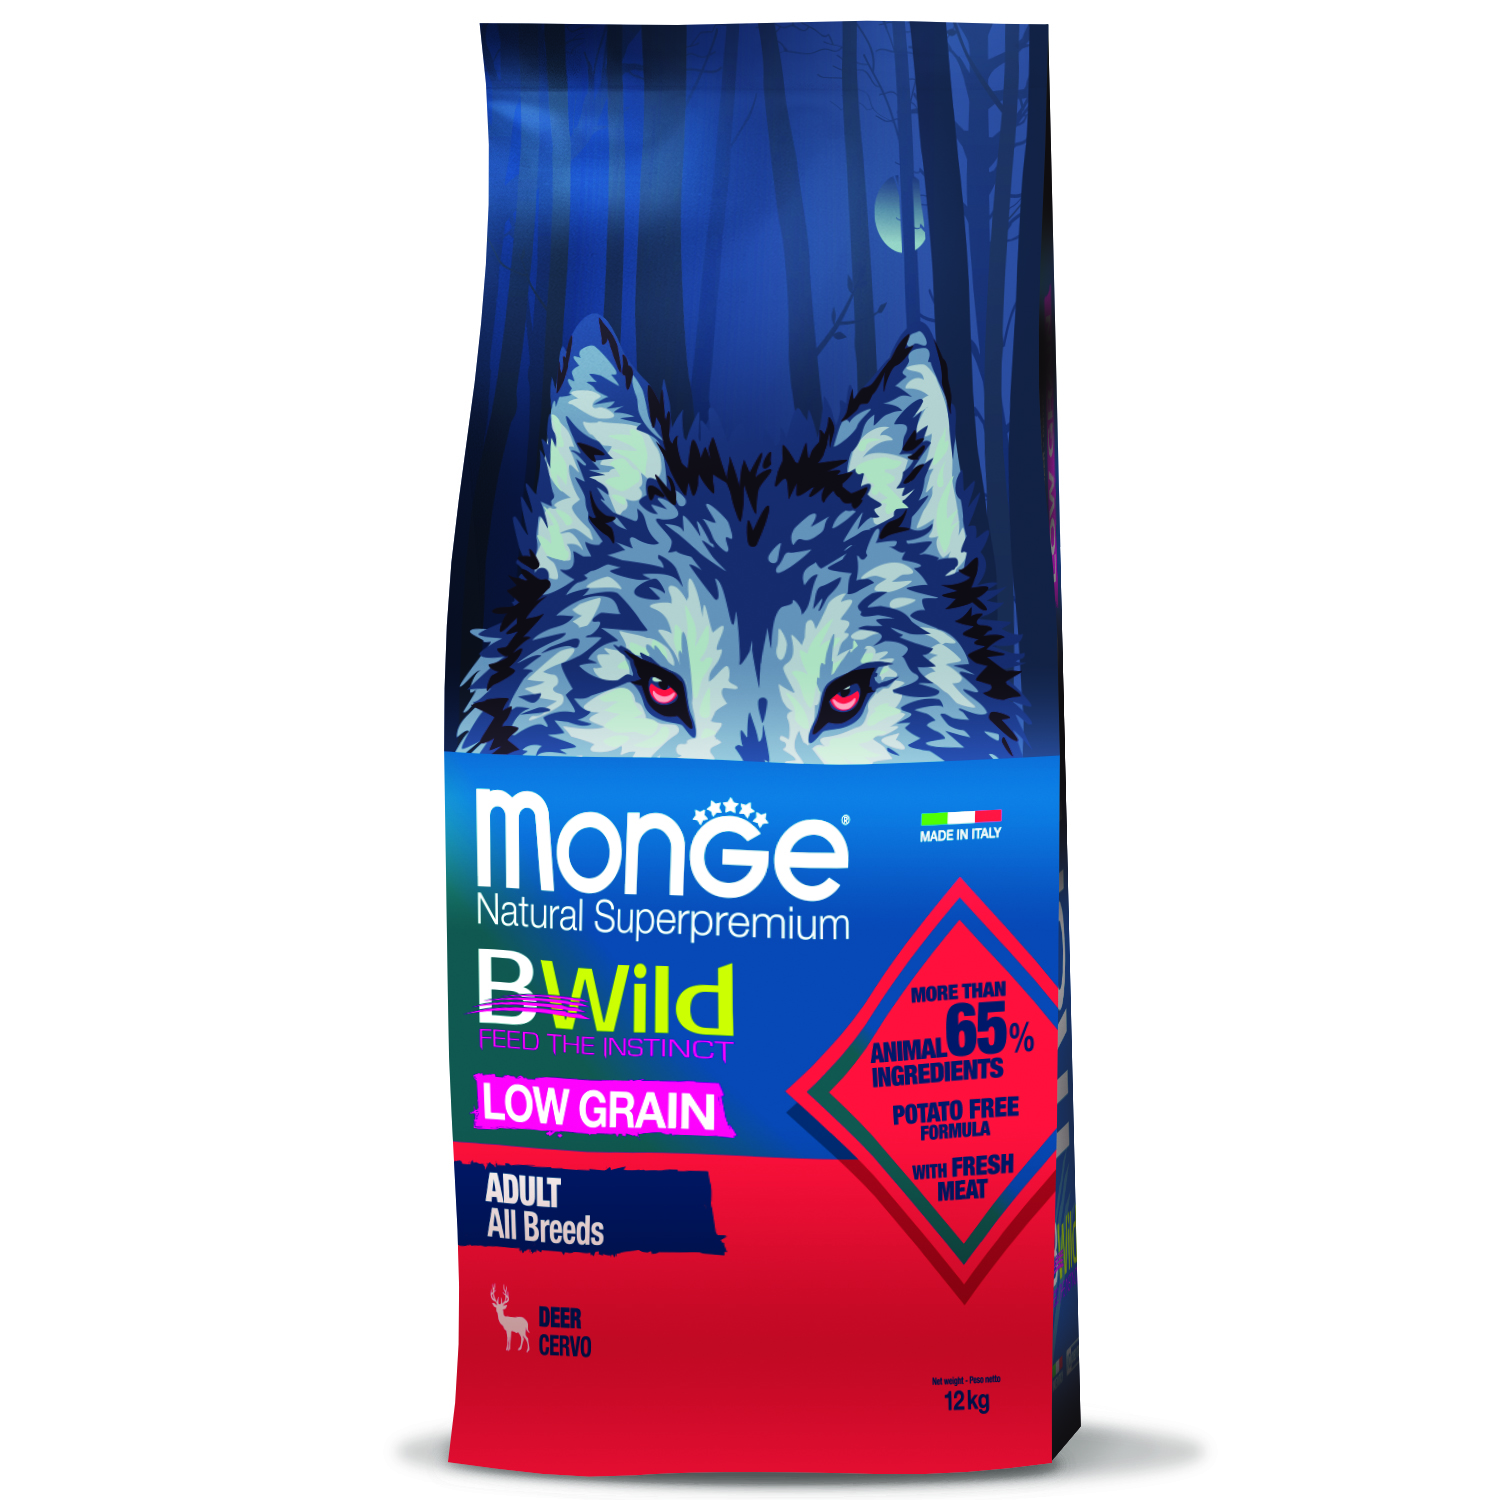 Сухой корм Monge Dog BWild LOW GRAIN для взрослых собак, низкозерновой, из мяса оленя 12 кг